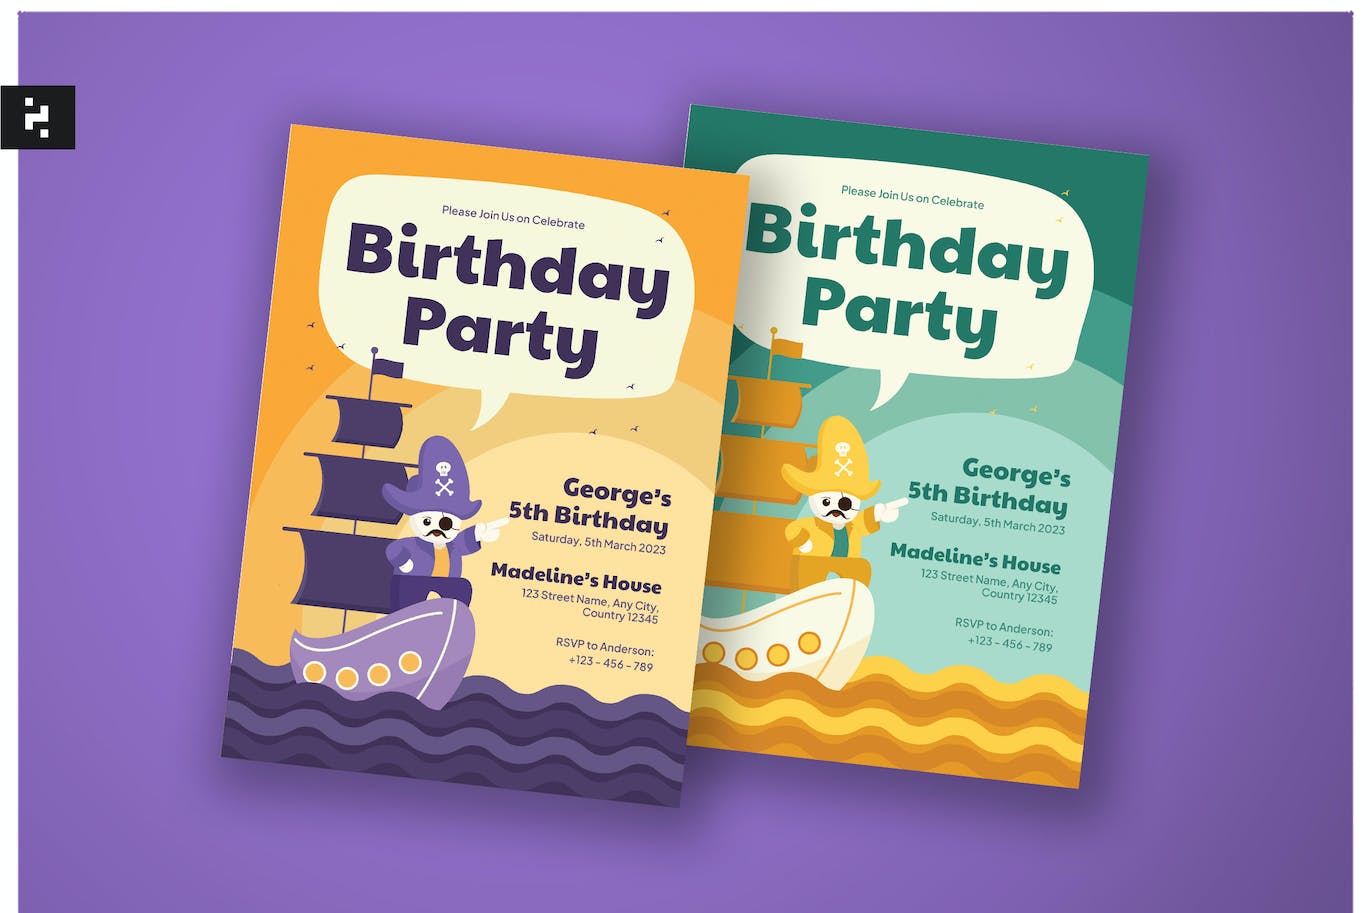 海盗主题儿童生日邀请函设计模板 Kids Birthday Invitation – Pirates Theme 设计素材 第1张